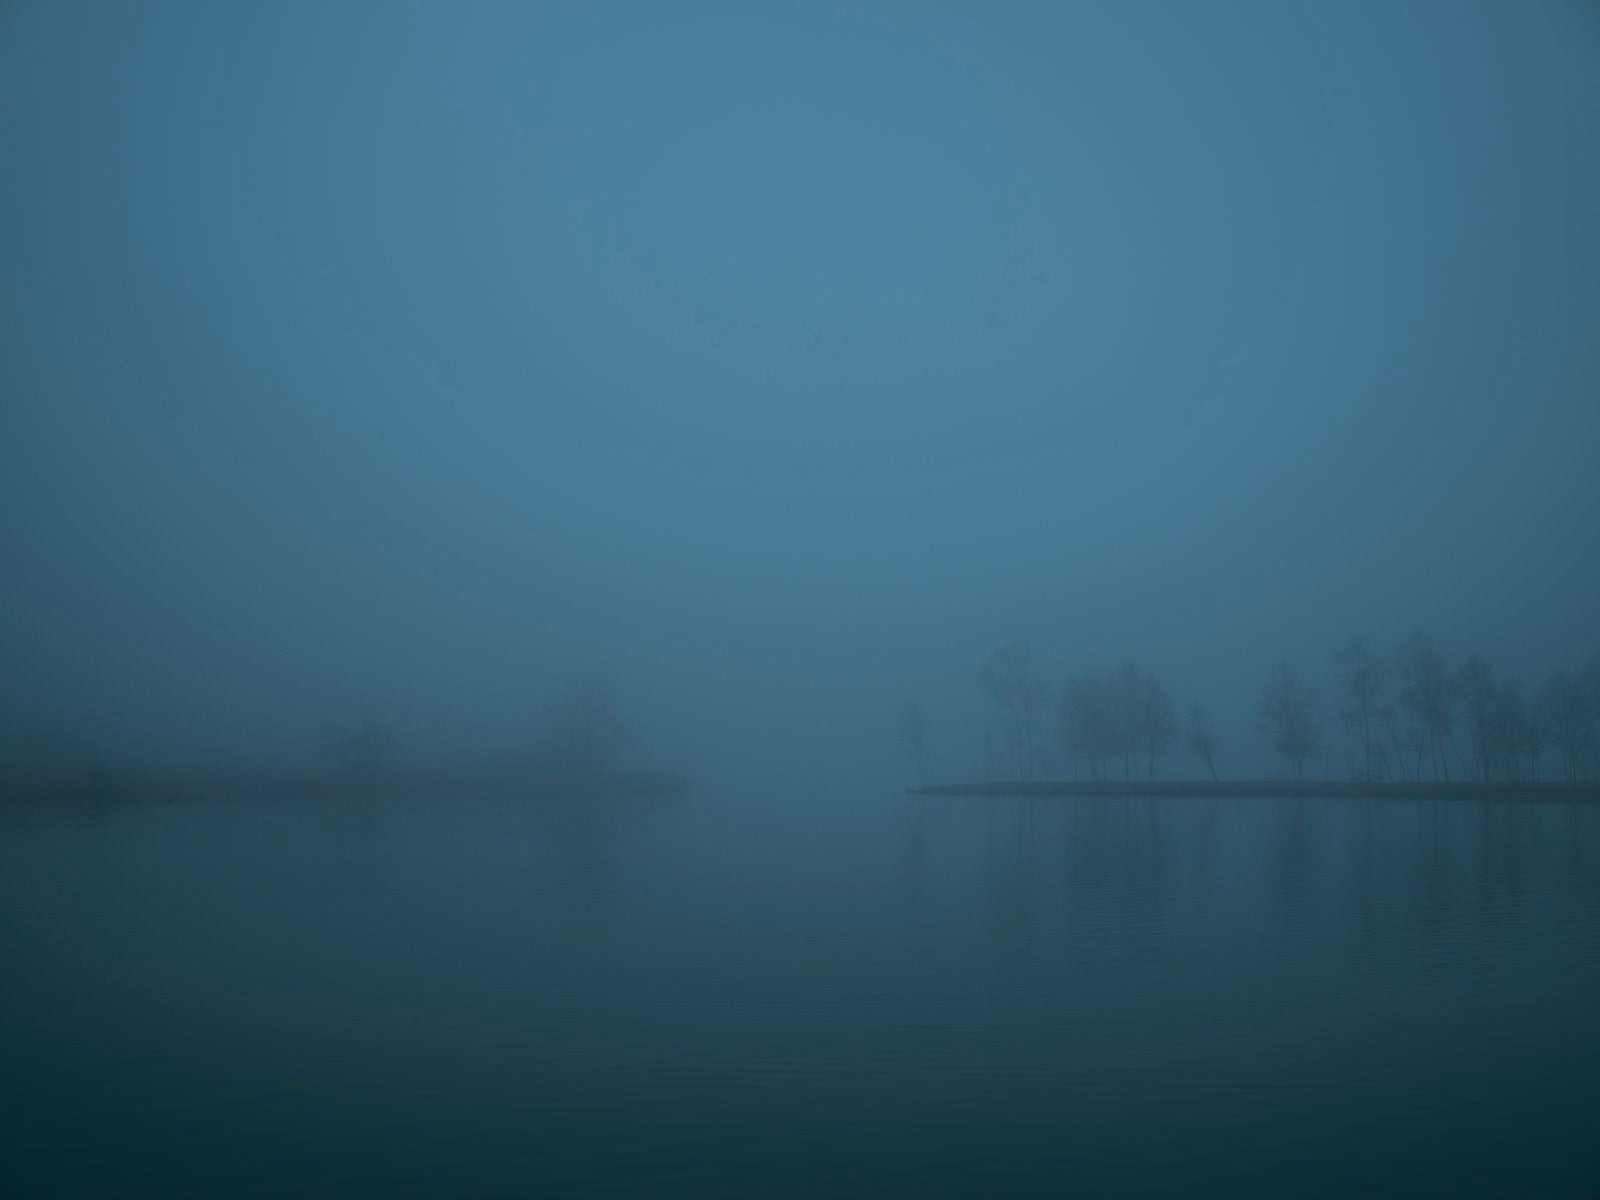 「Nuit et brouillard」の写真